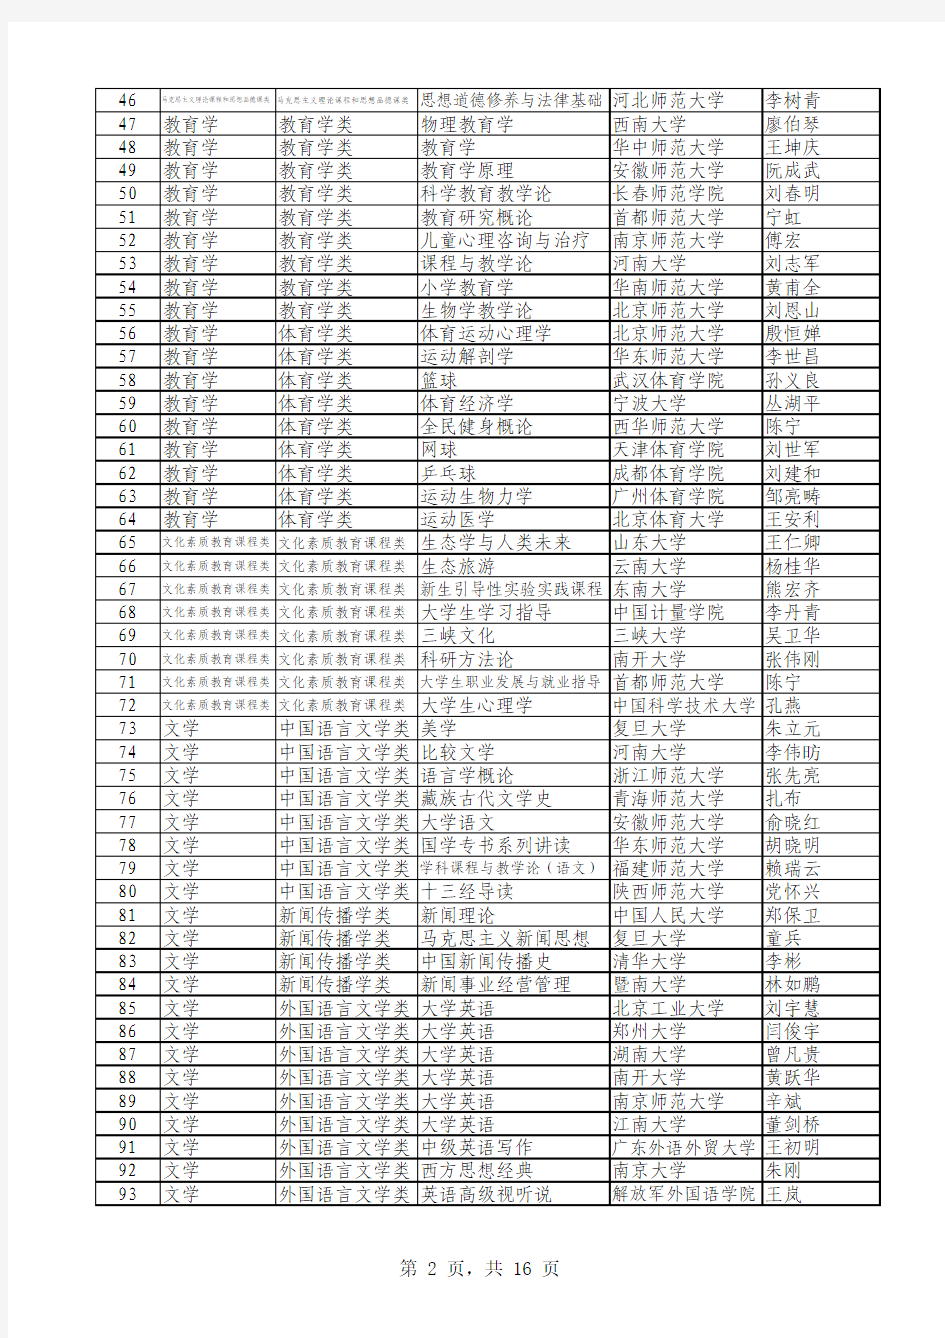 2010年度国家精品课程公示名单